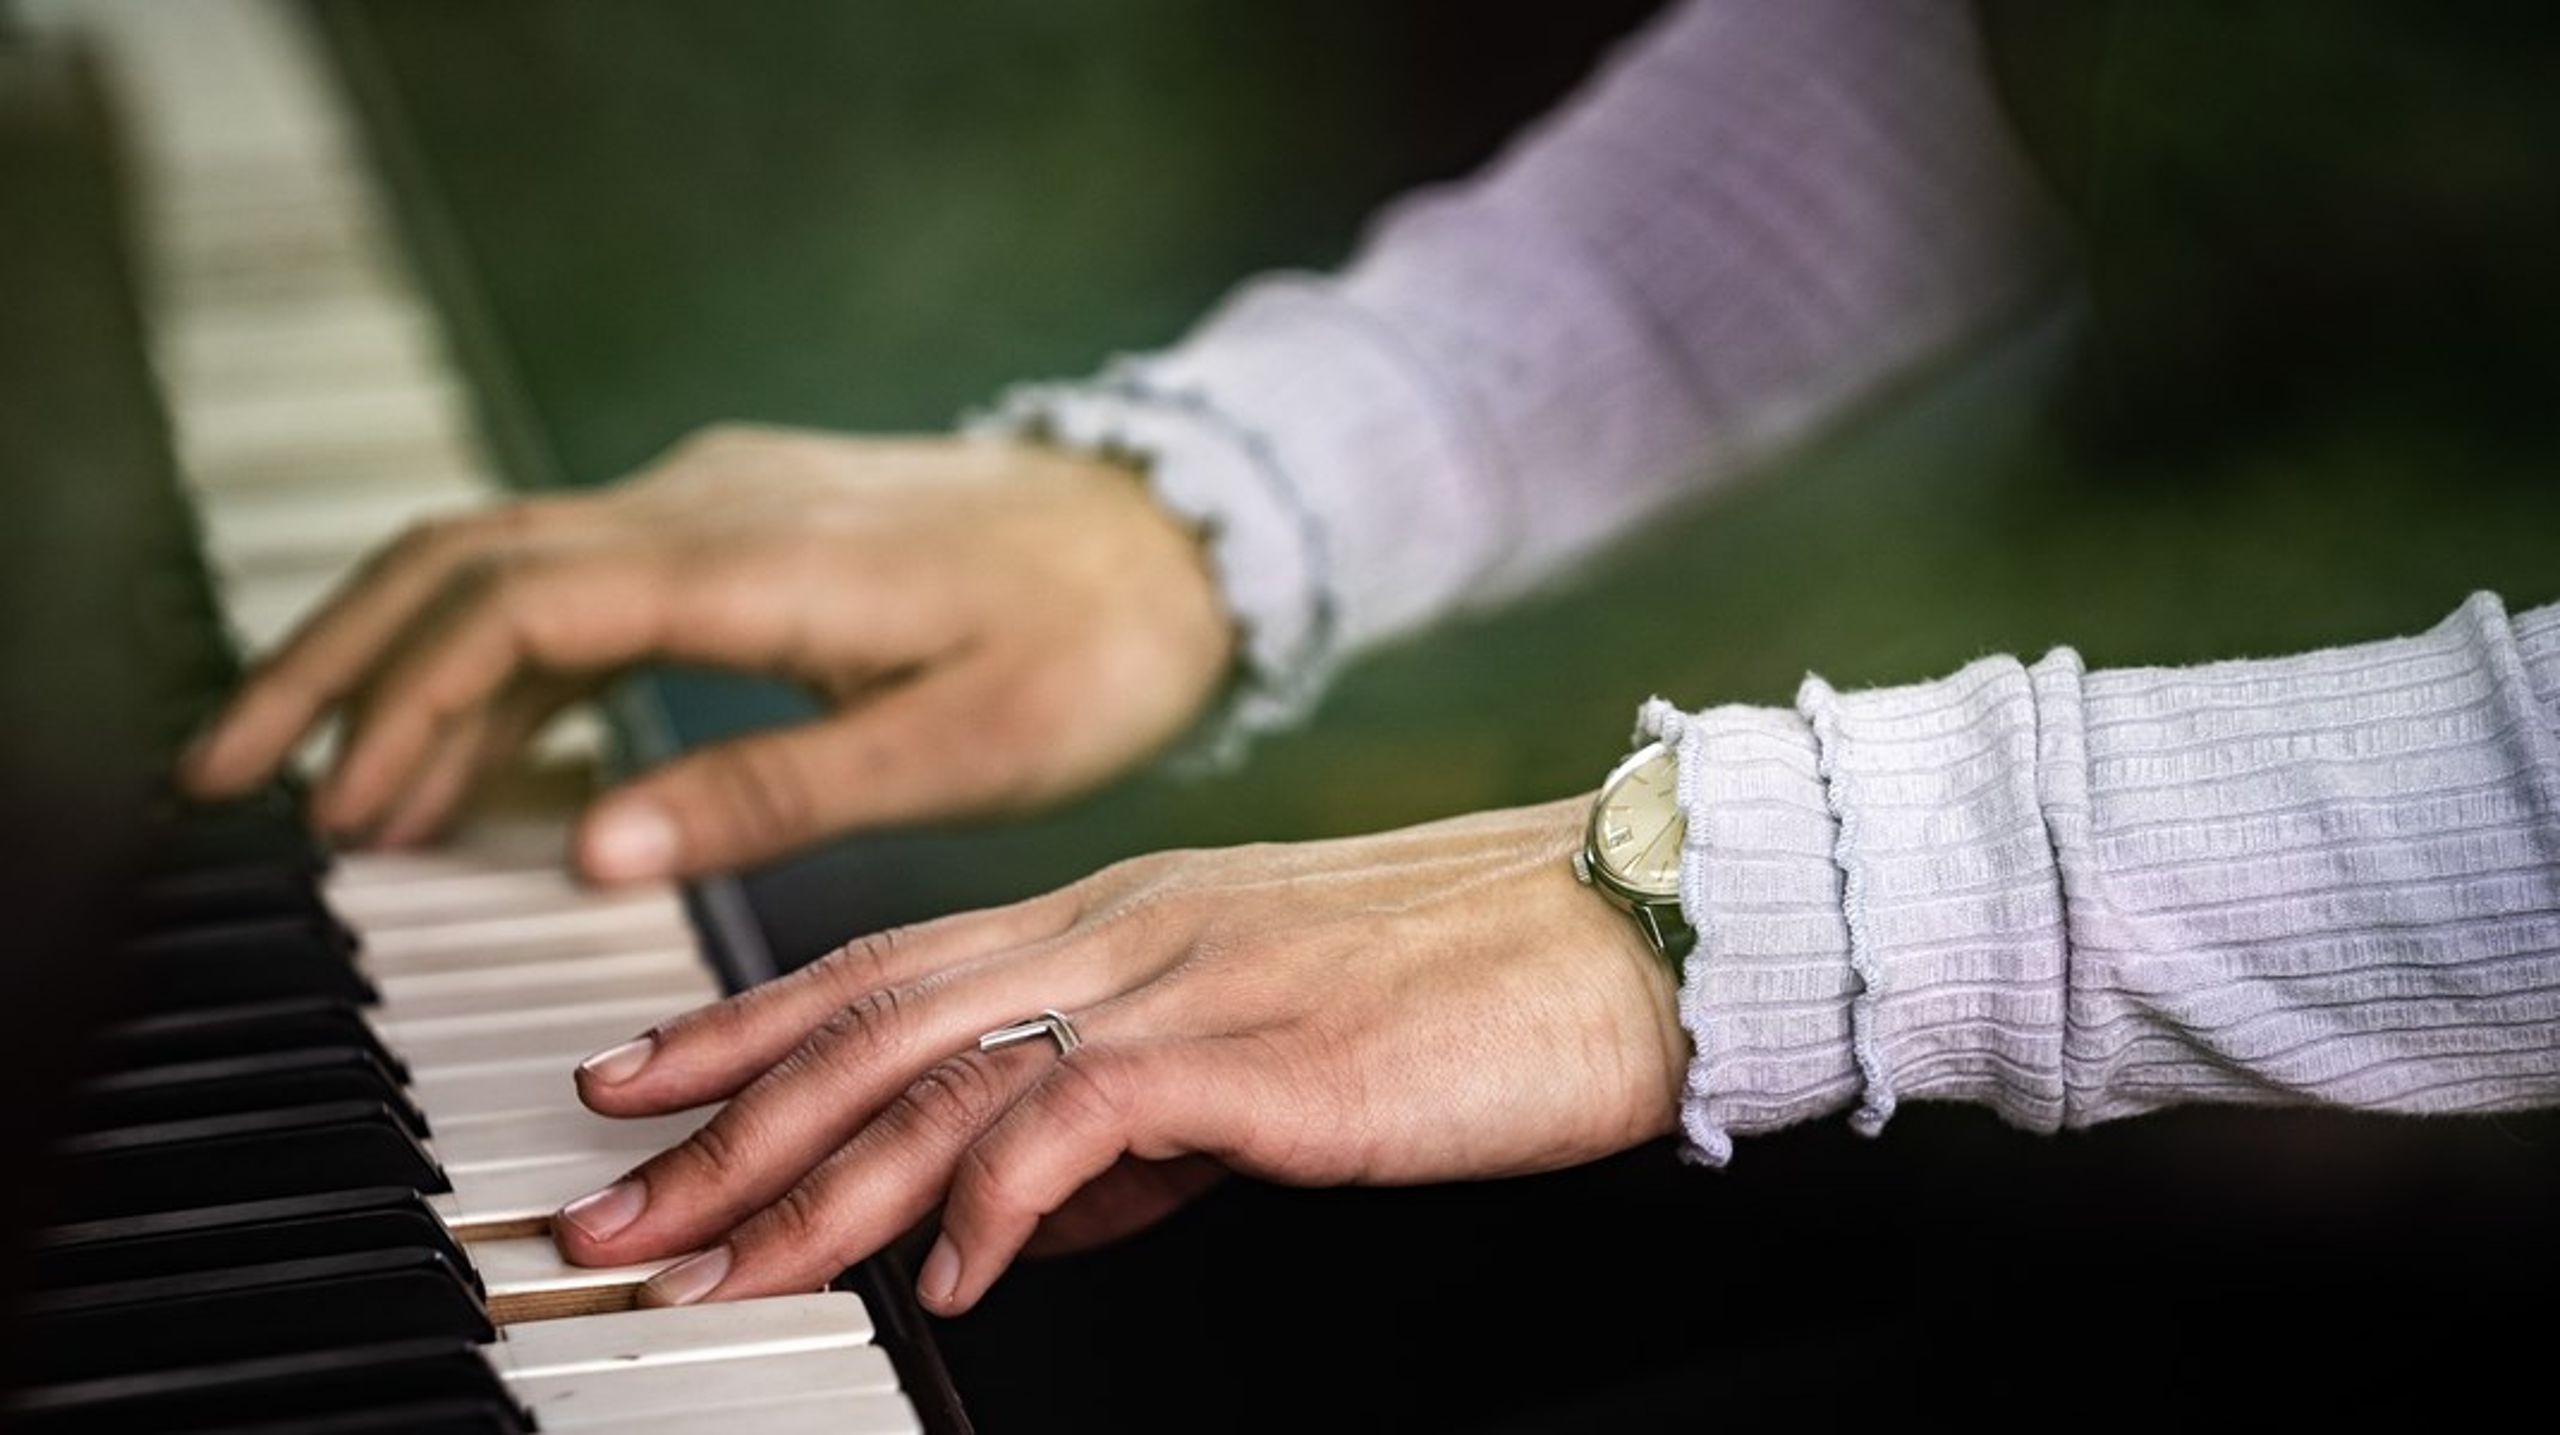 Der bør være en varedeklaration på musik, så lytterne ved, om de lytter til musik skabt af mennesker eller kunstig intelligens, skriver Anna Lidell og Andreas Hemmeth. (Arkivfoto)